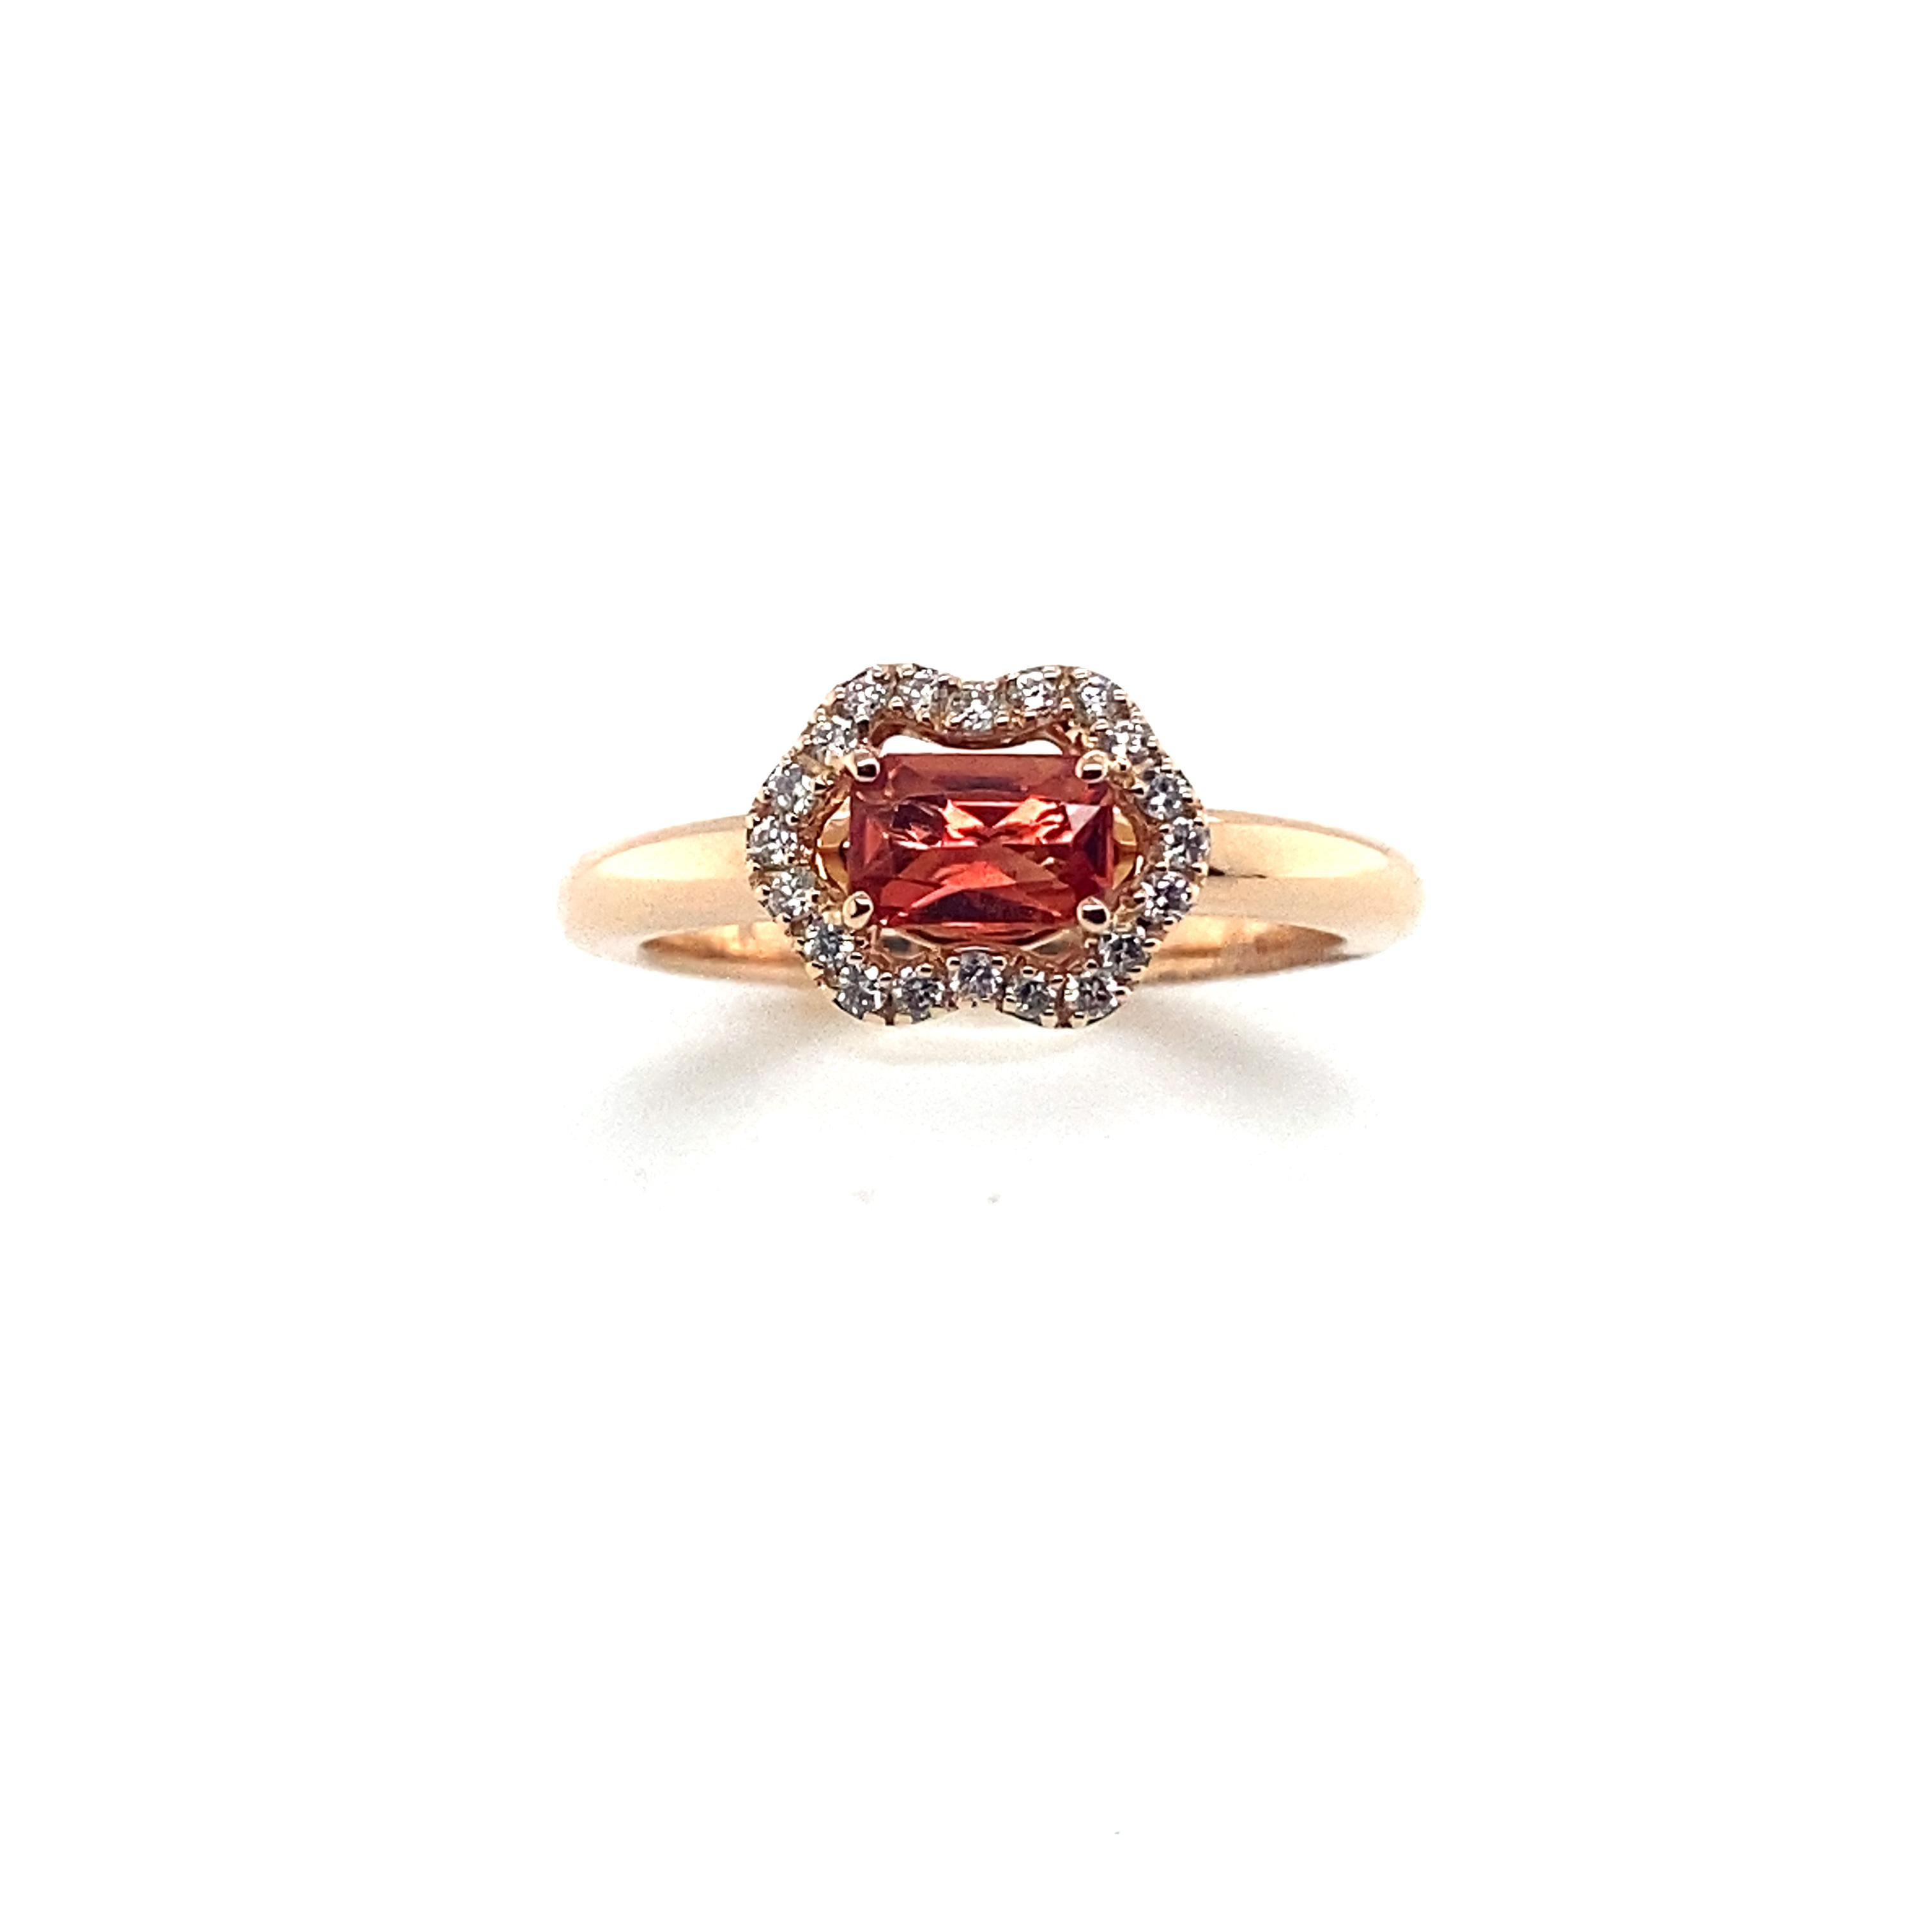 Ring aus Rotgold mit einem wunderschönen orangefarbenen Saphir, der von Diamanten umgeben ist.
Ring aus Rotgold, begleitet von einem orangefarbenen Coussin-Saphir mit einem Gewicht von 0,53 Karat, Farbe orange.
Er ist umgeben von 20 Diamanten mit